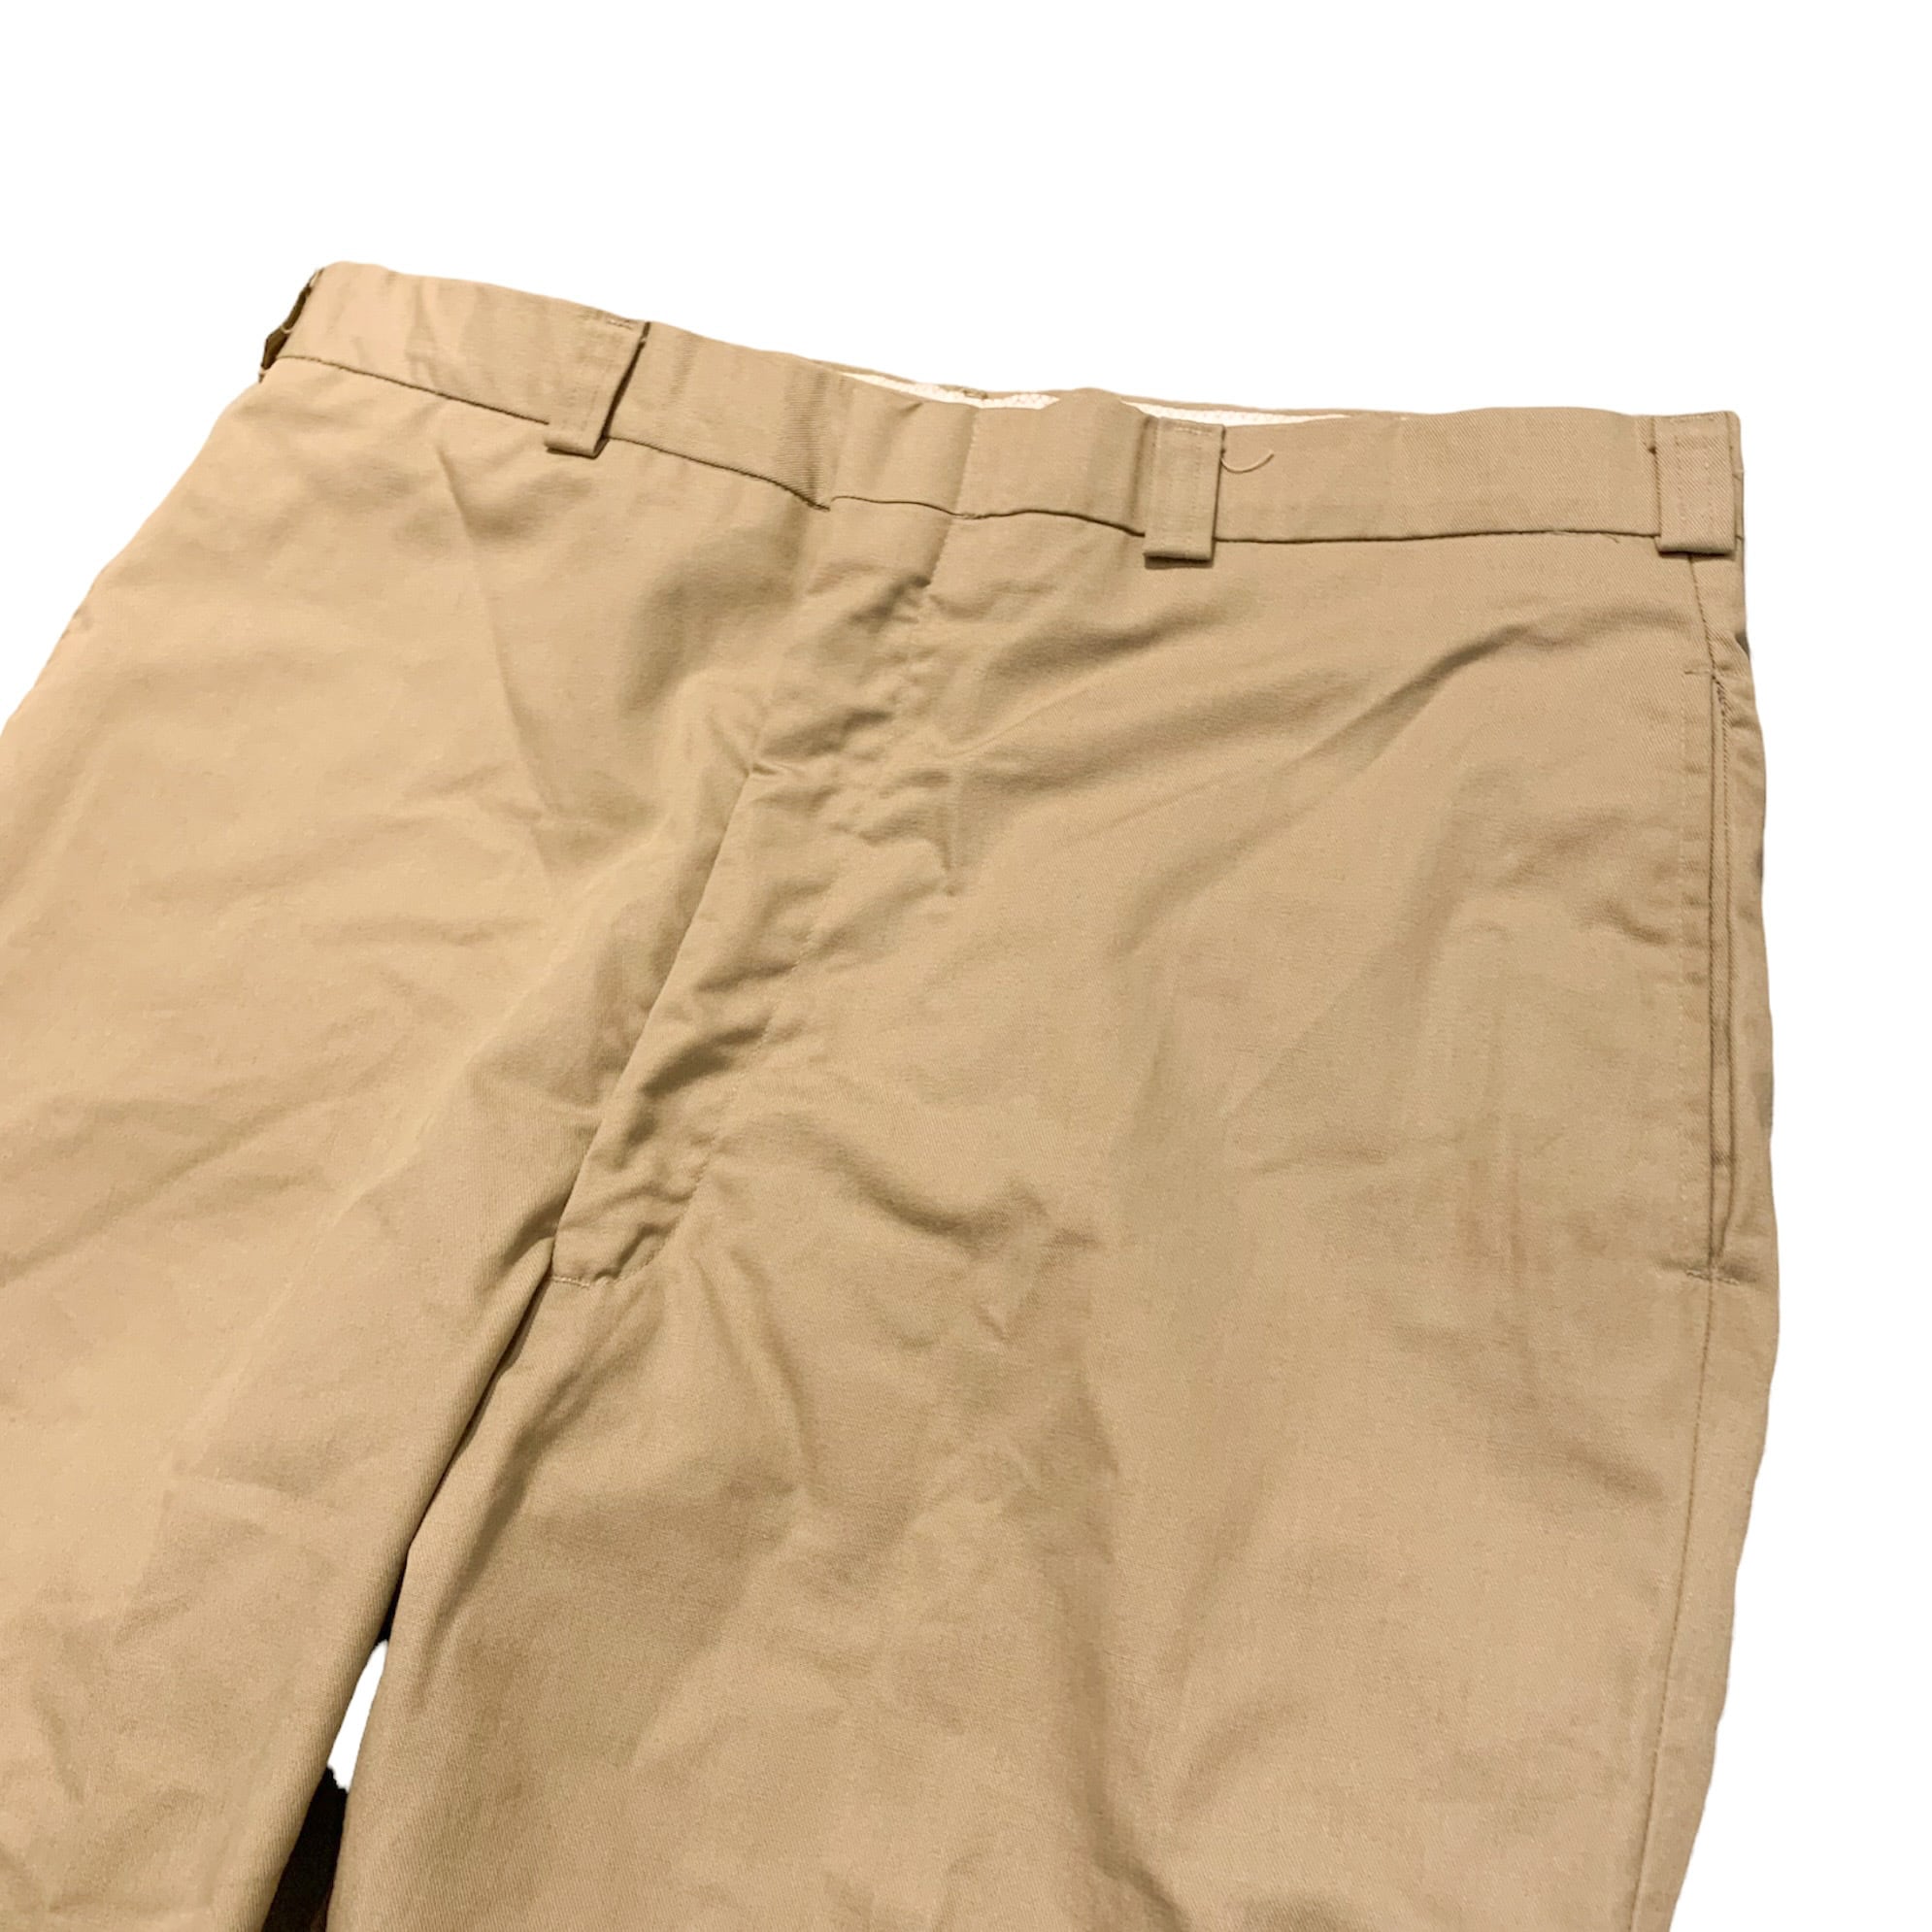 00's DSCP Chino Trouser Pants / 米軍 チノトラウザー パンツ